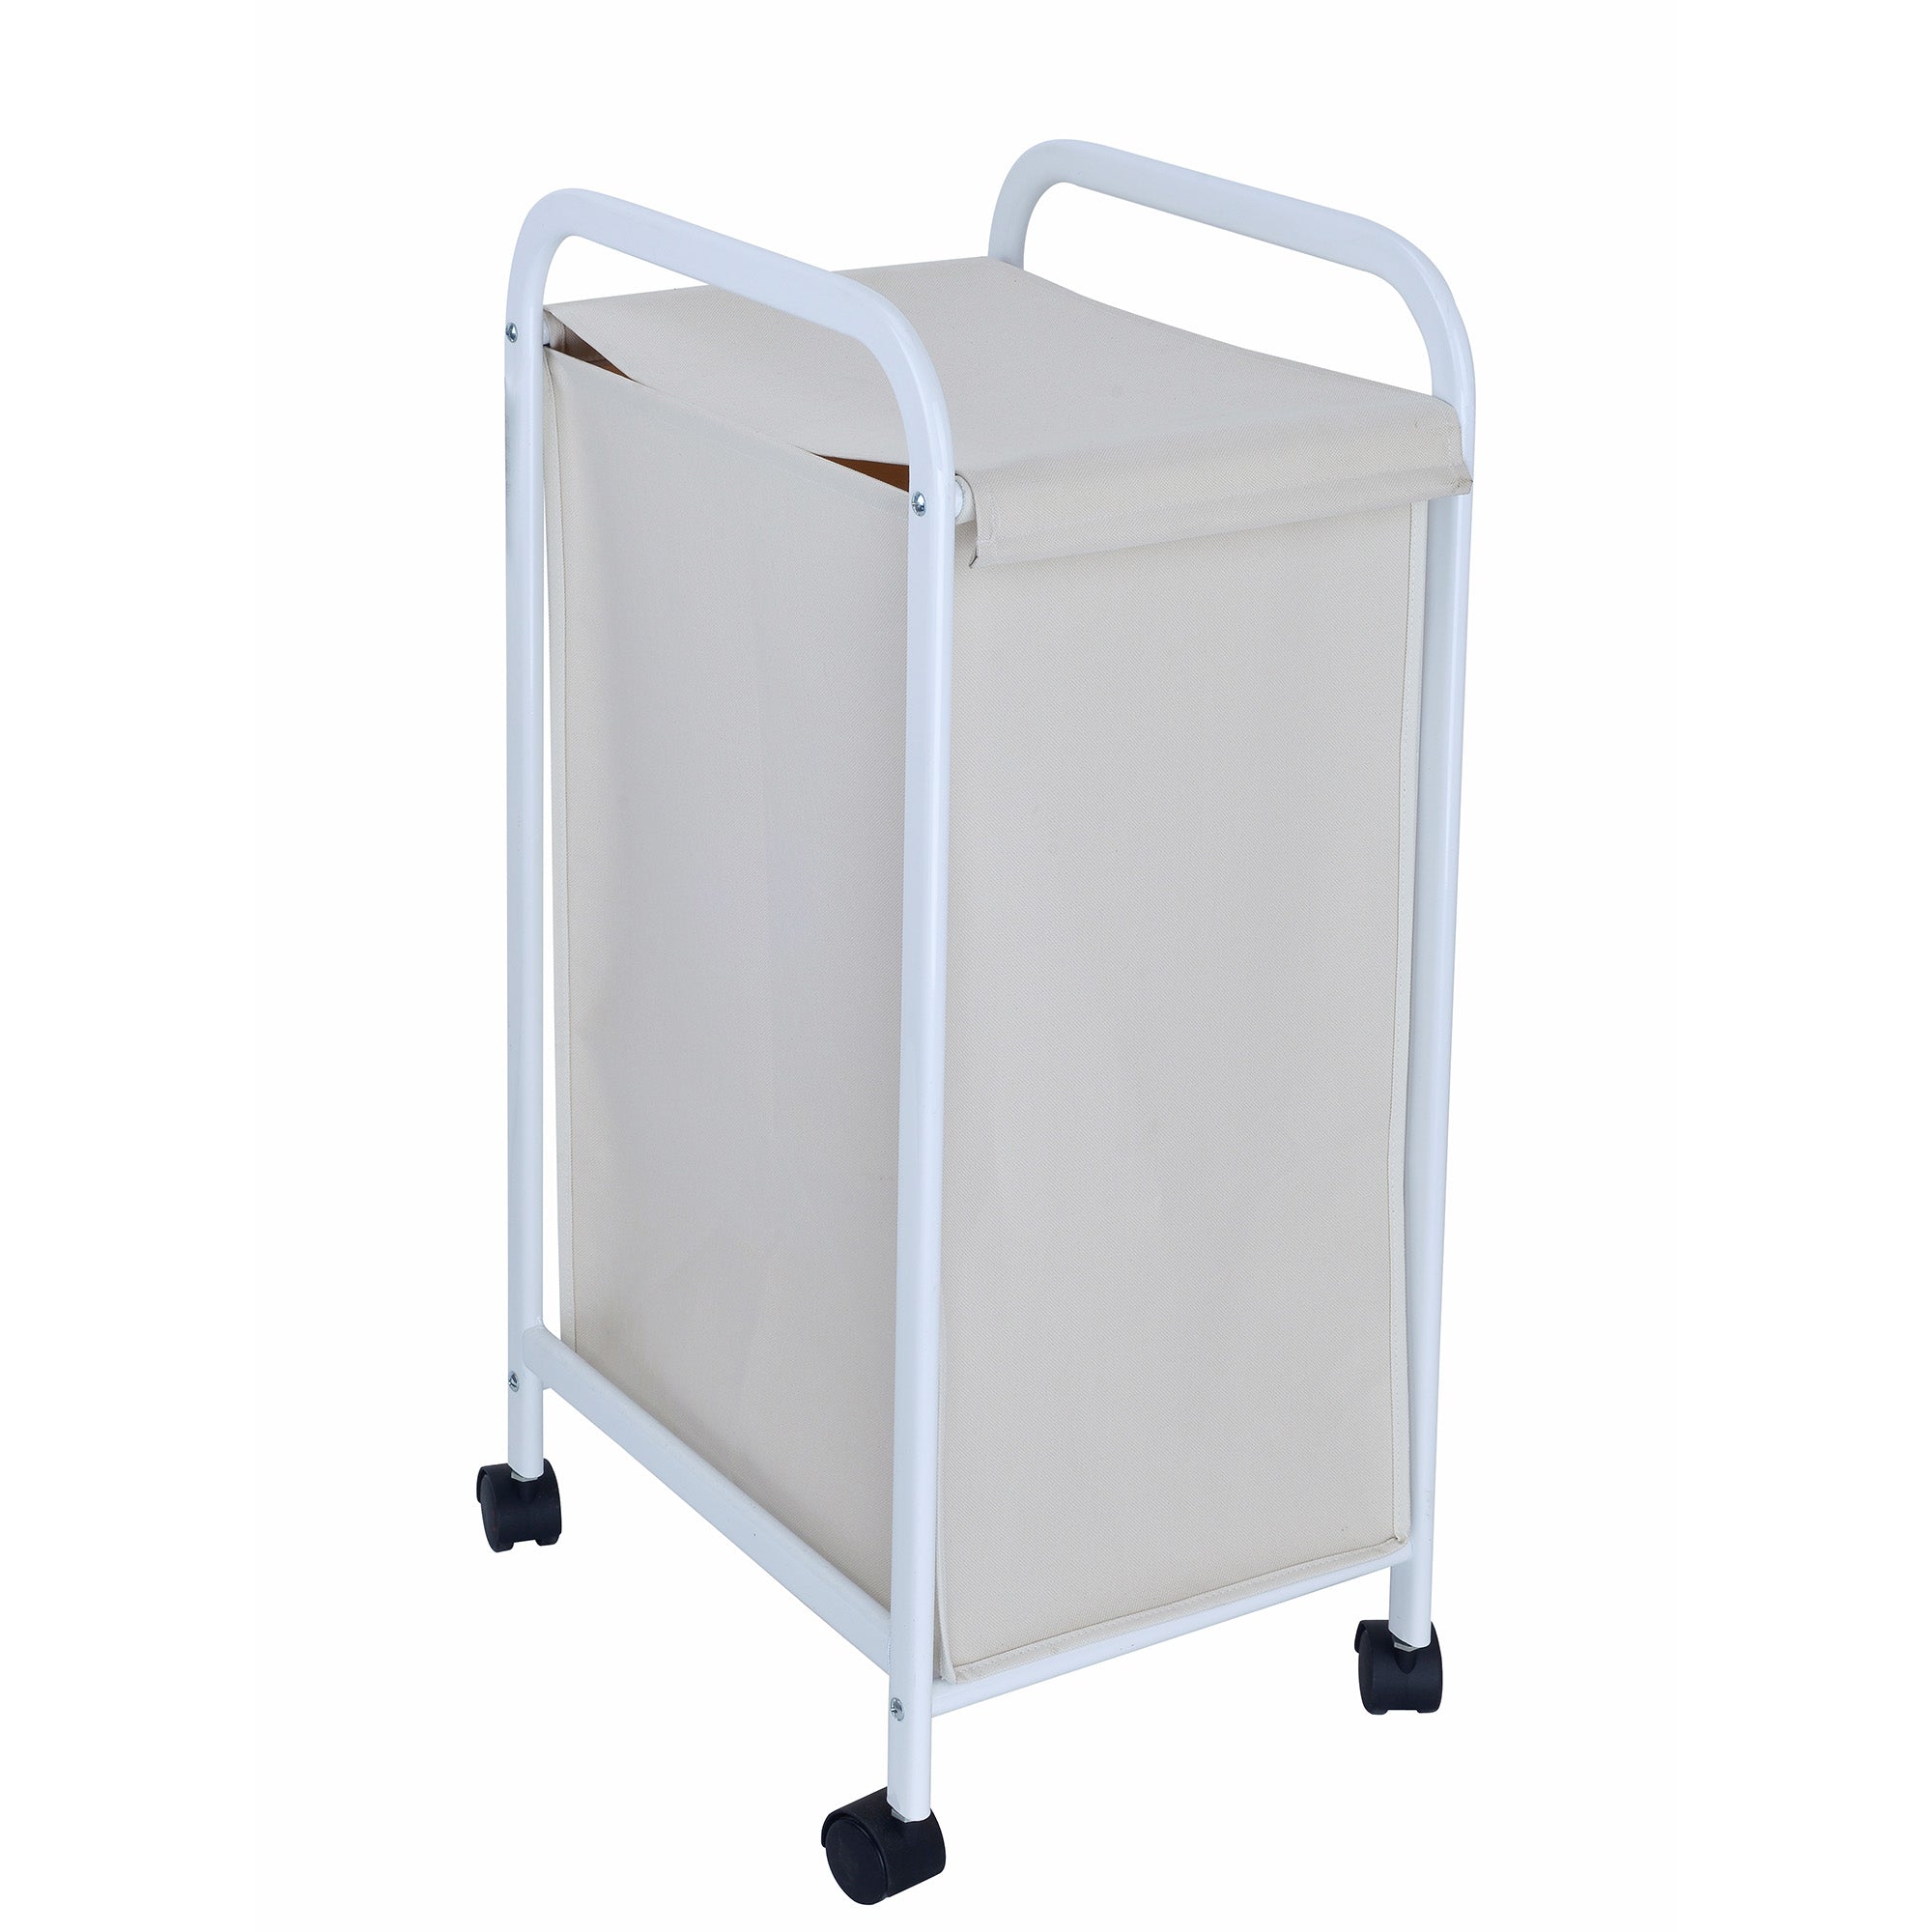 Laundry Hamper Cart, AN-40-2166